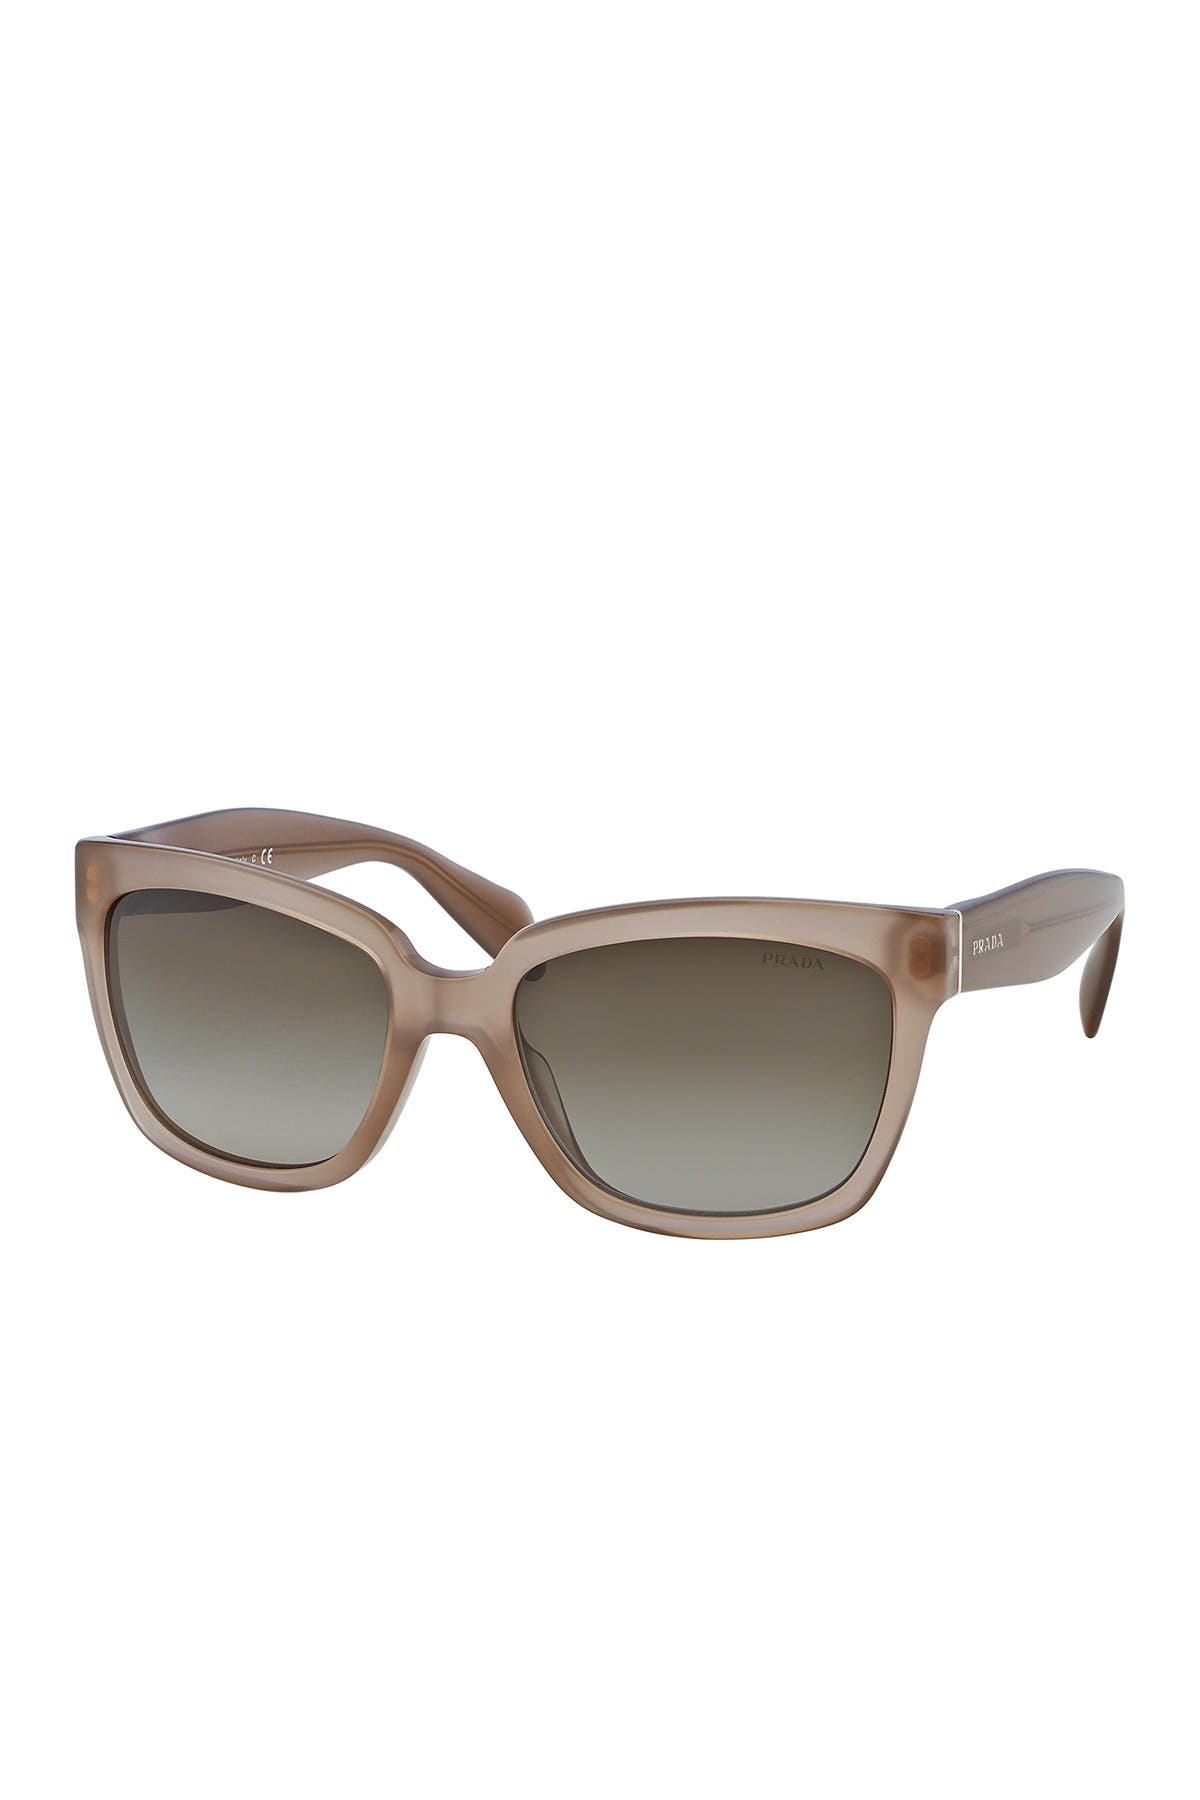 Prada | 56mm Square Sunglasses 